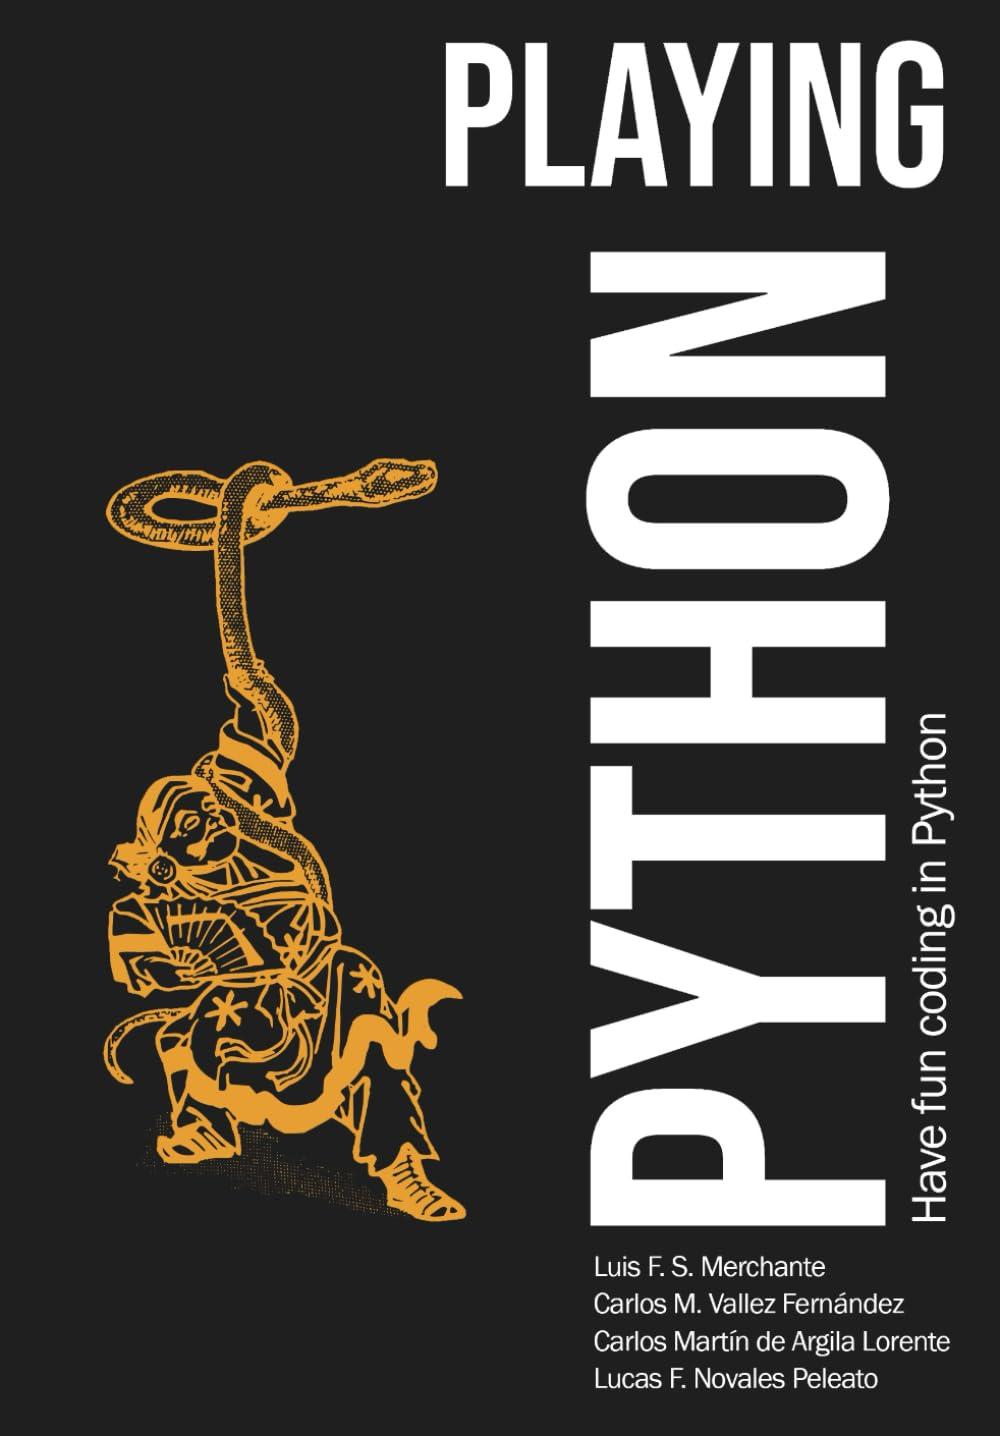 playing python have fun coding in python 1st edition luis f. s merchante, carlos m. vallez, carlos martín de